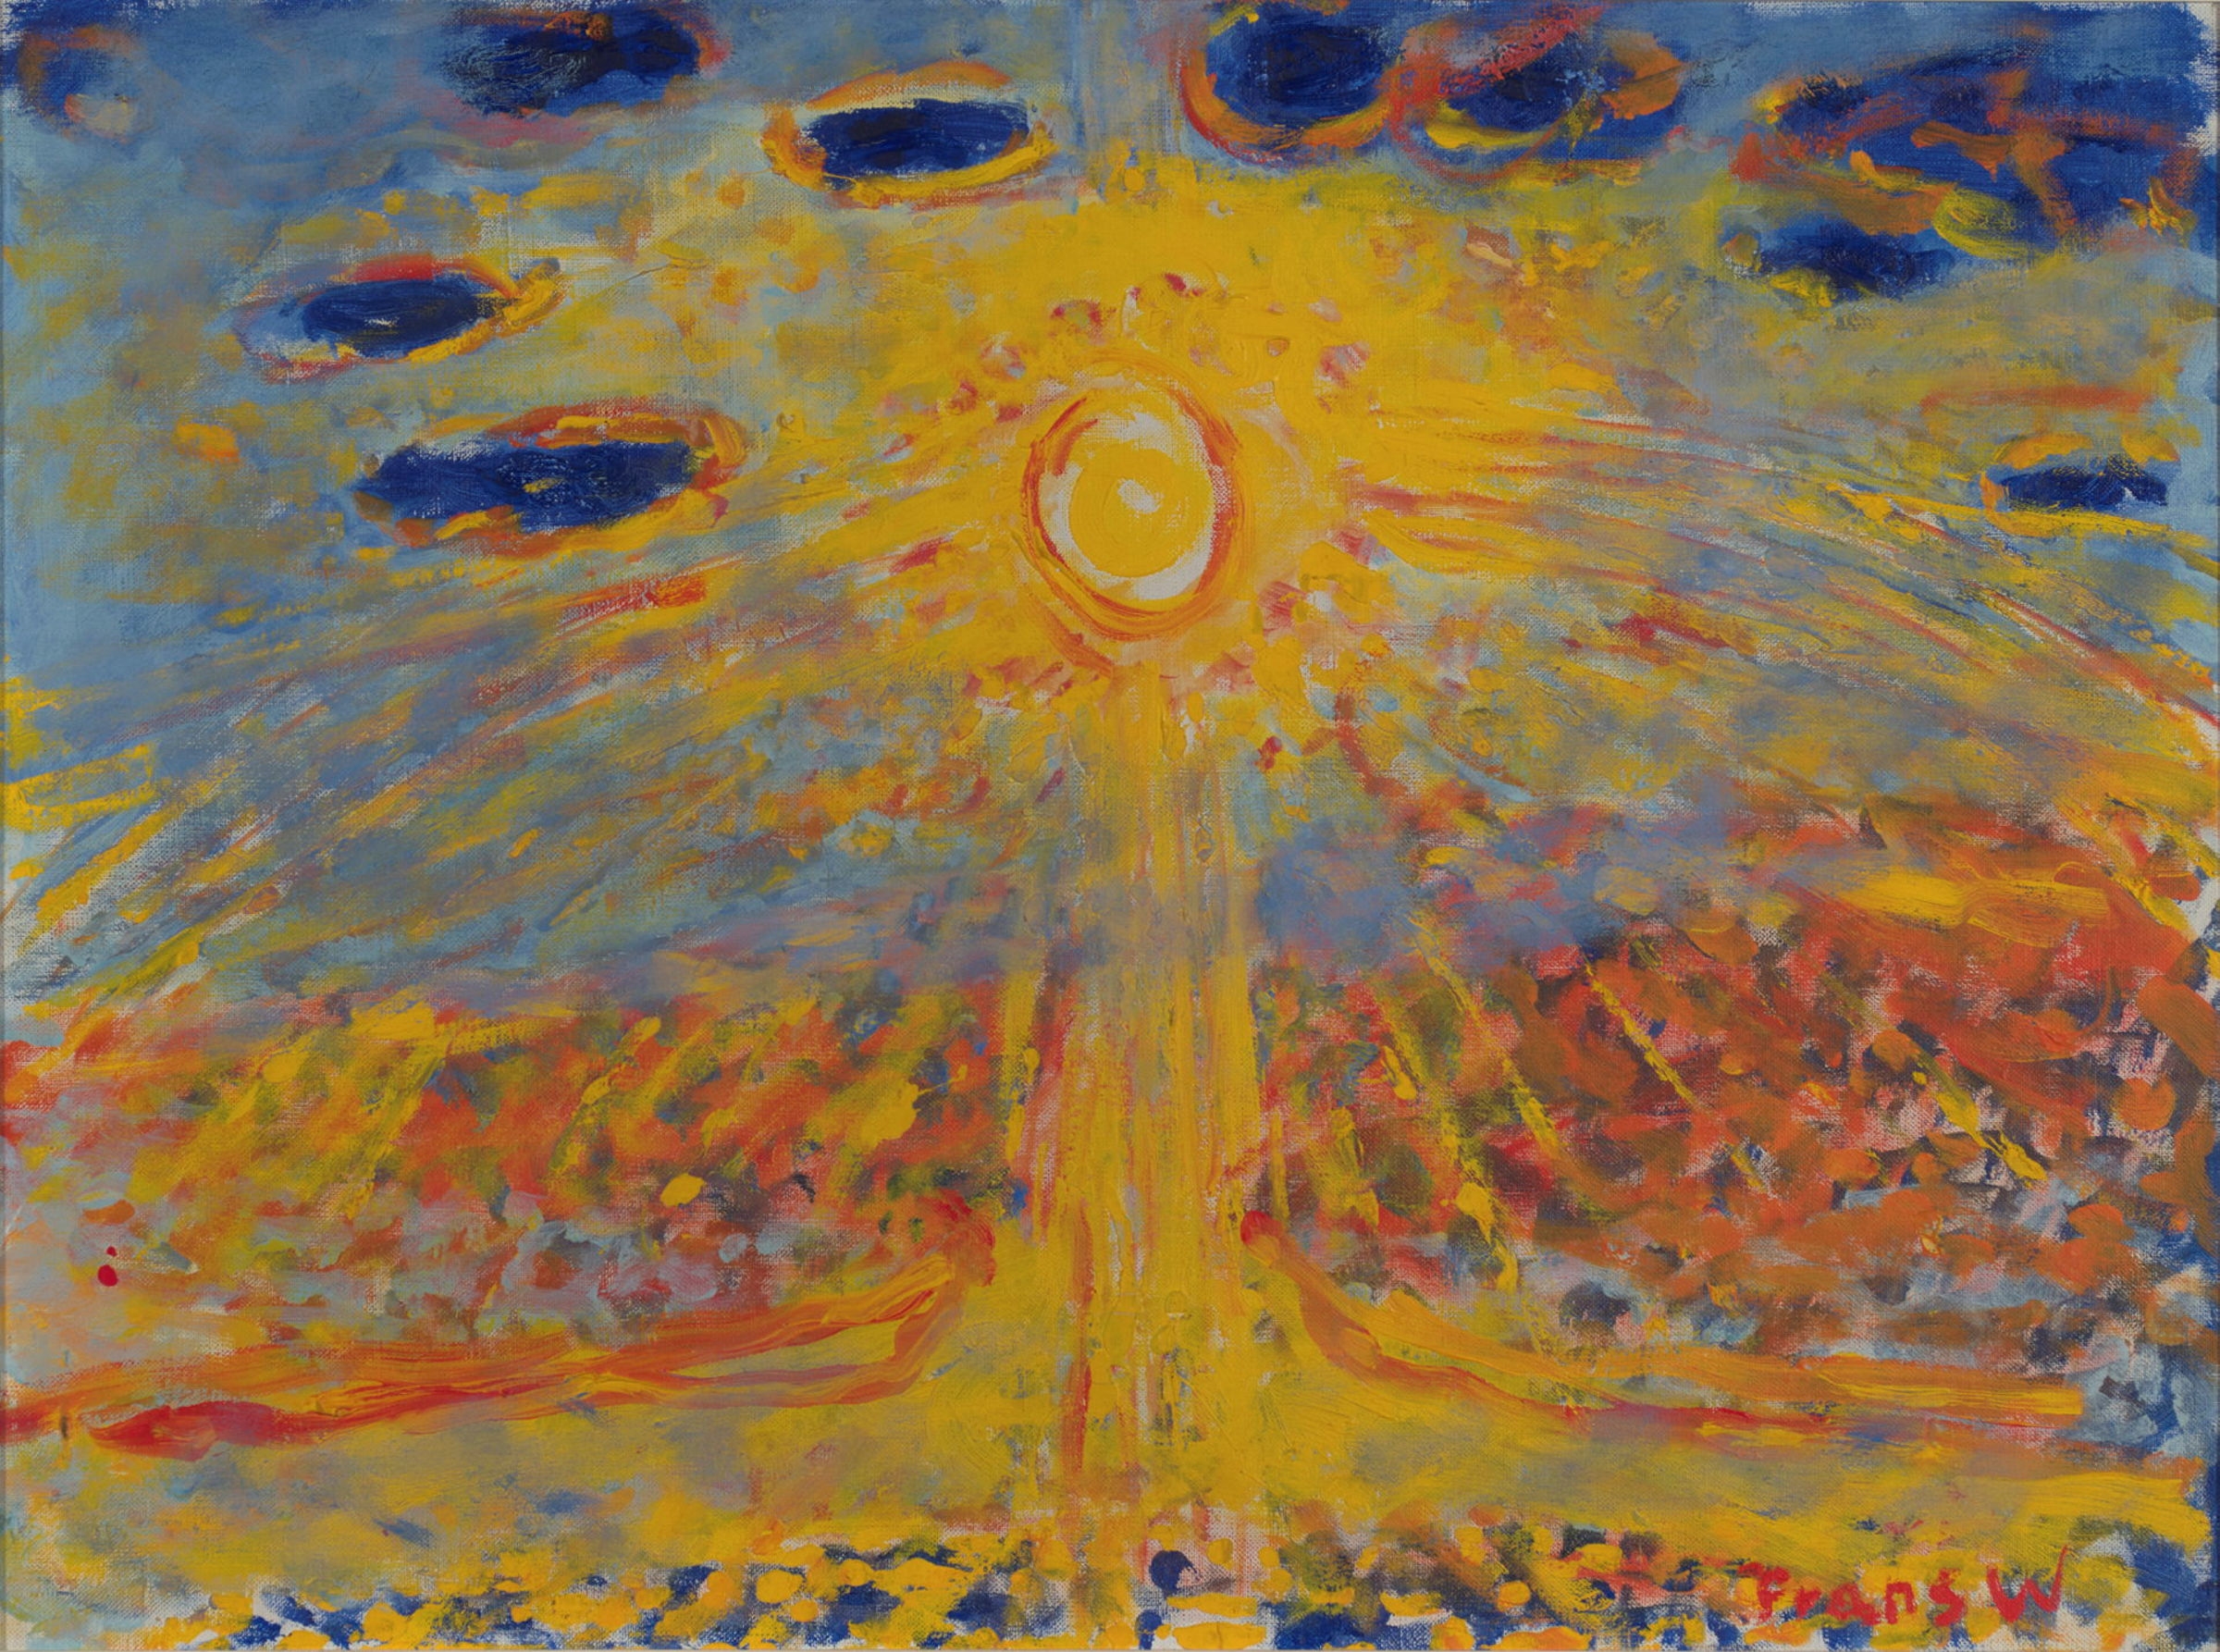 Sol og skyer by Frans Widerberg